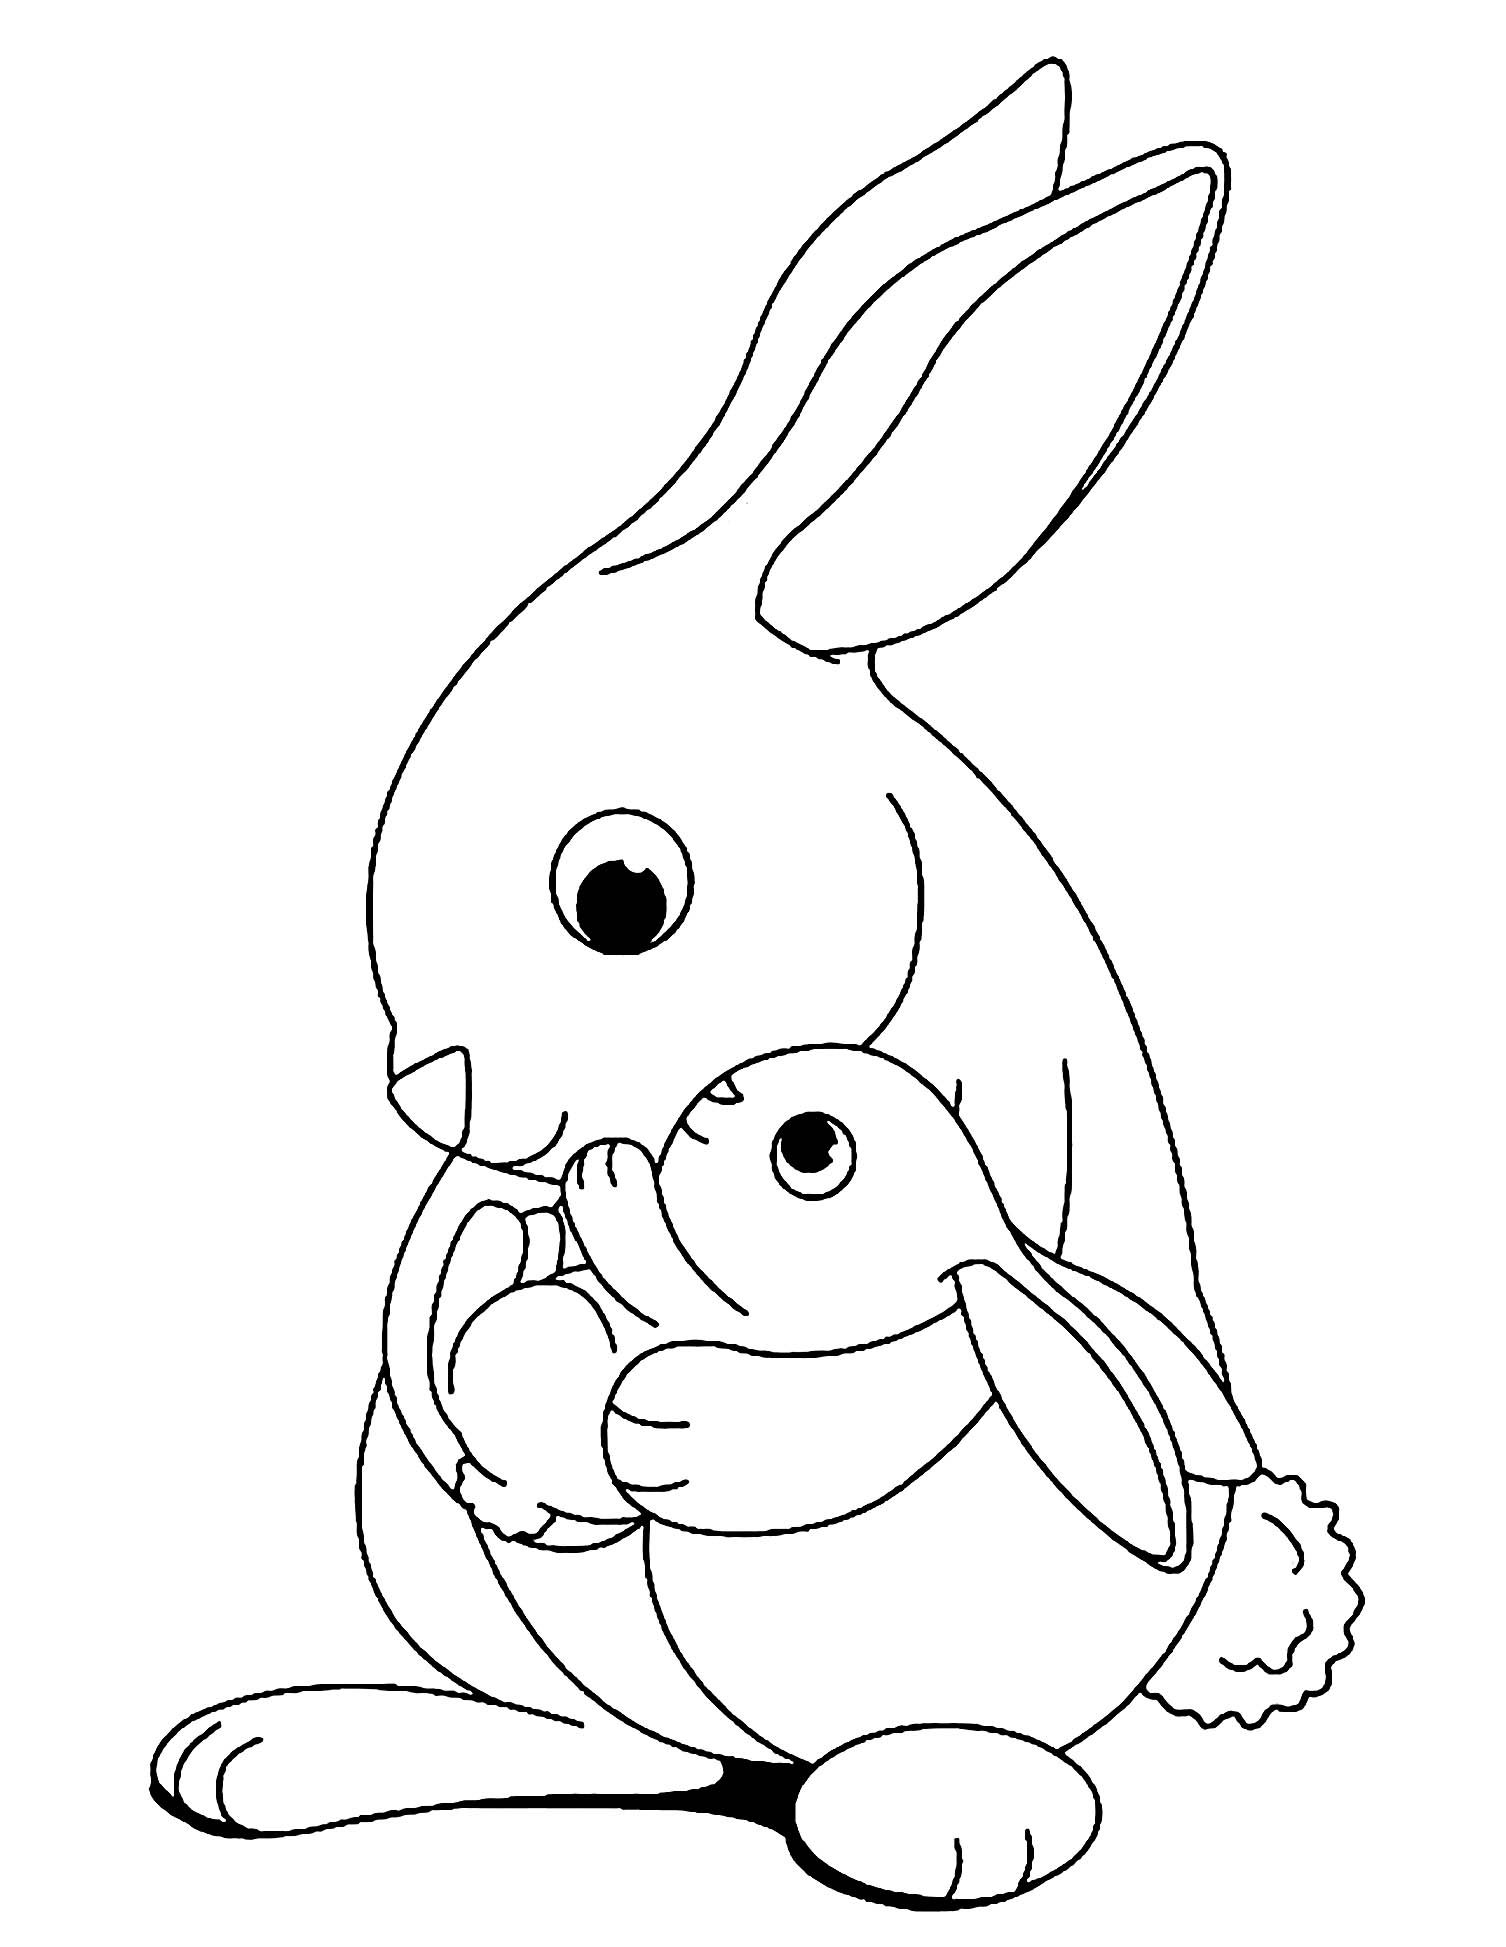 Tranh tô màu thỏ mẹ và thỏ con thân thương bên nhau